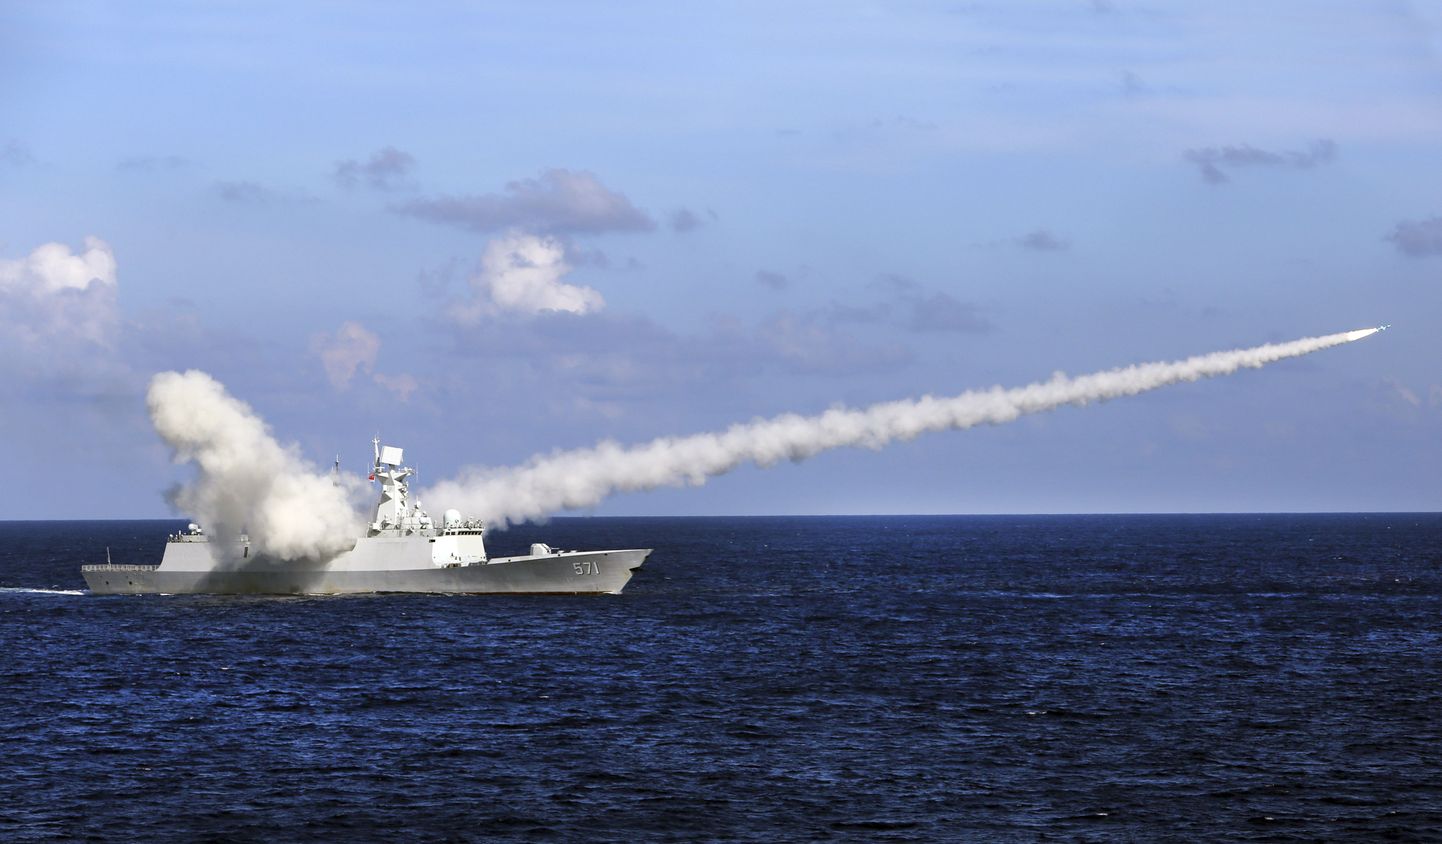 Hiina fregatt Yuncheng Paracelli saarte lähistel.